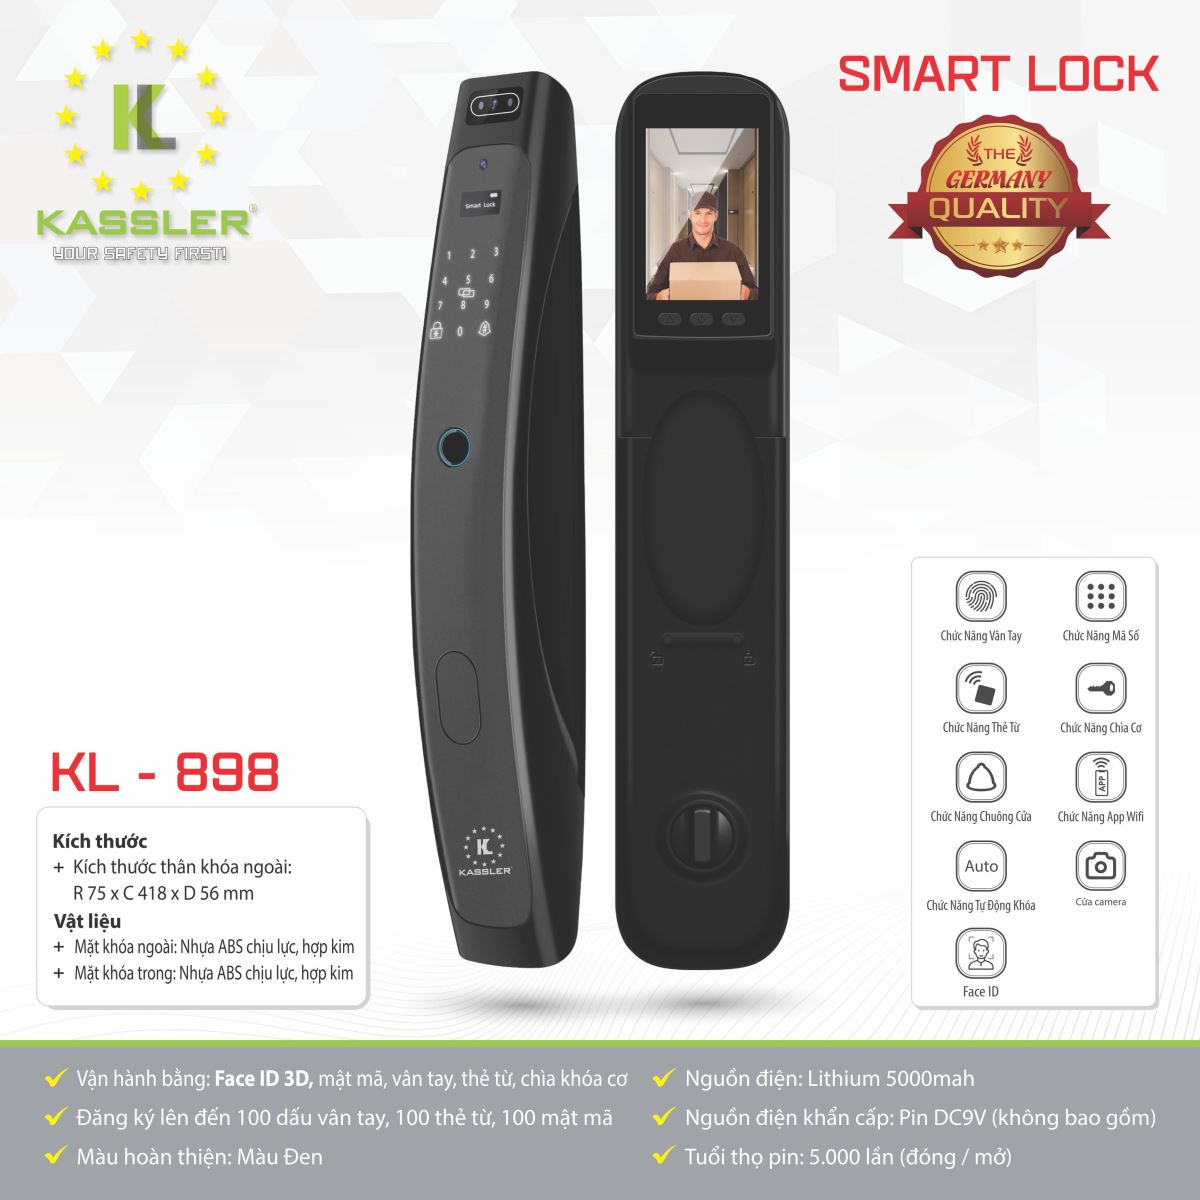 Khóa vân tay Kassler KL-898- Mở bằng APP điện thoại